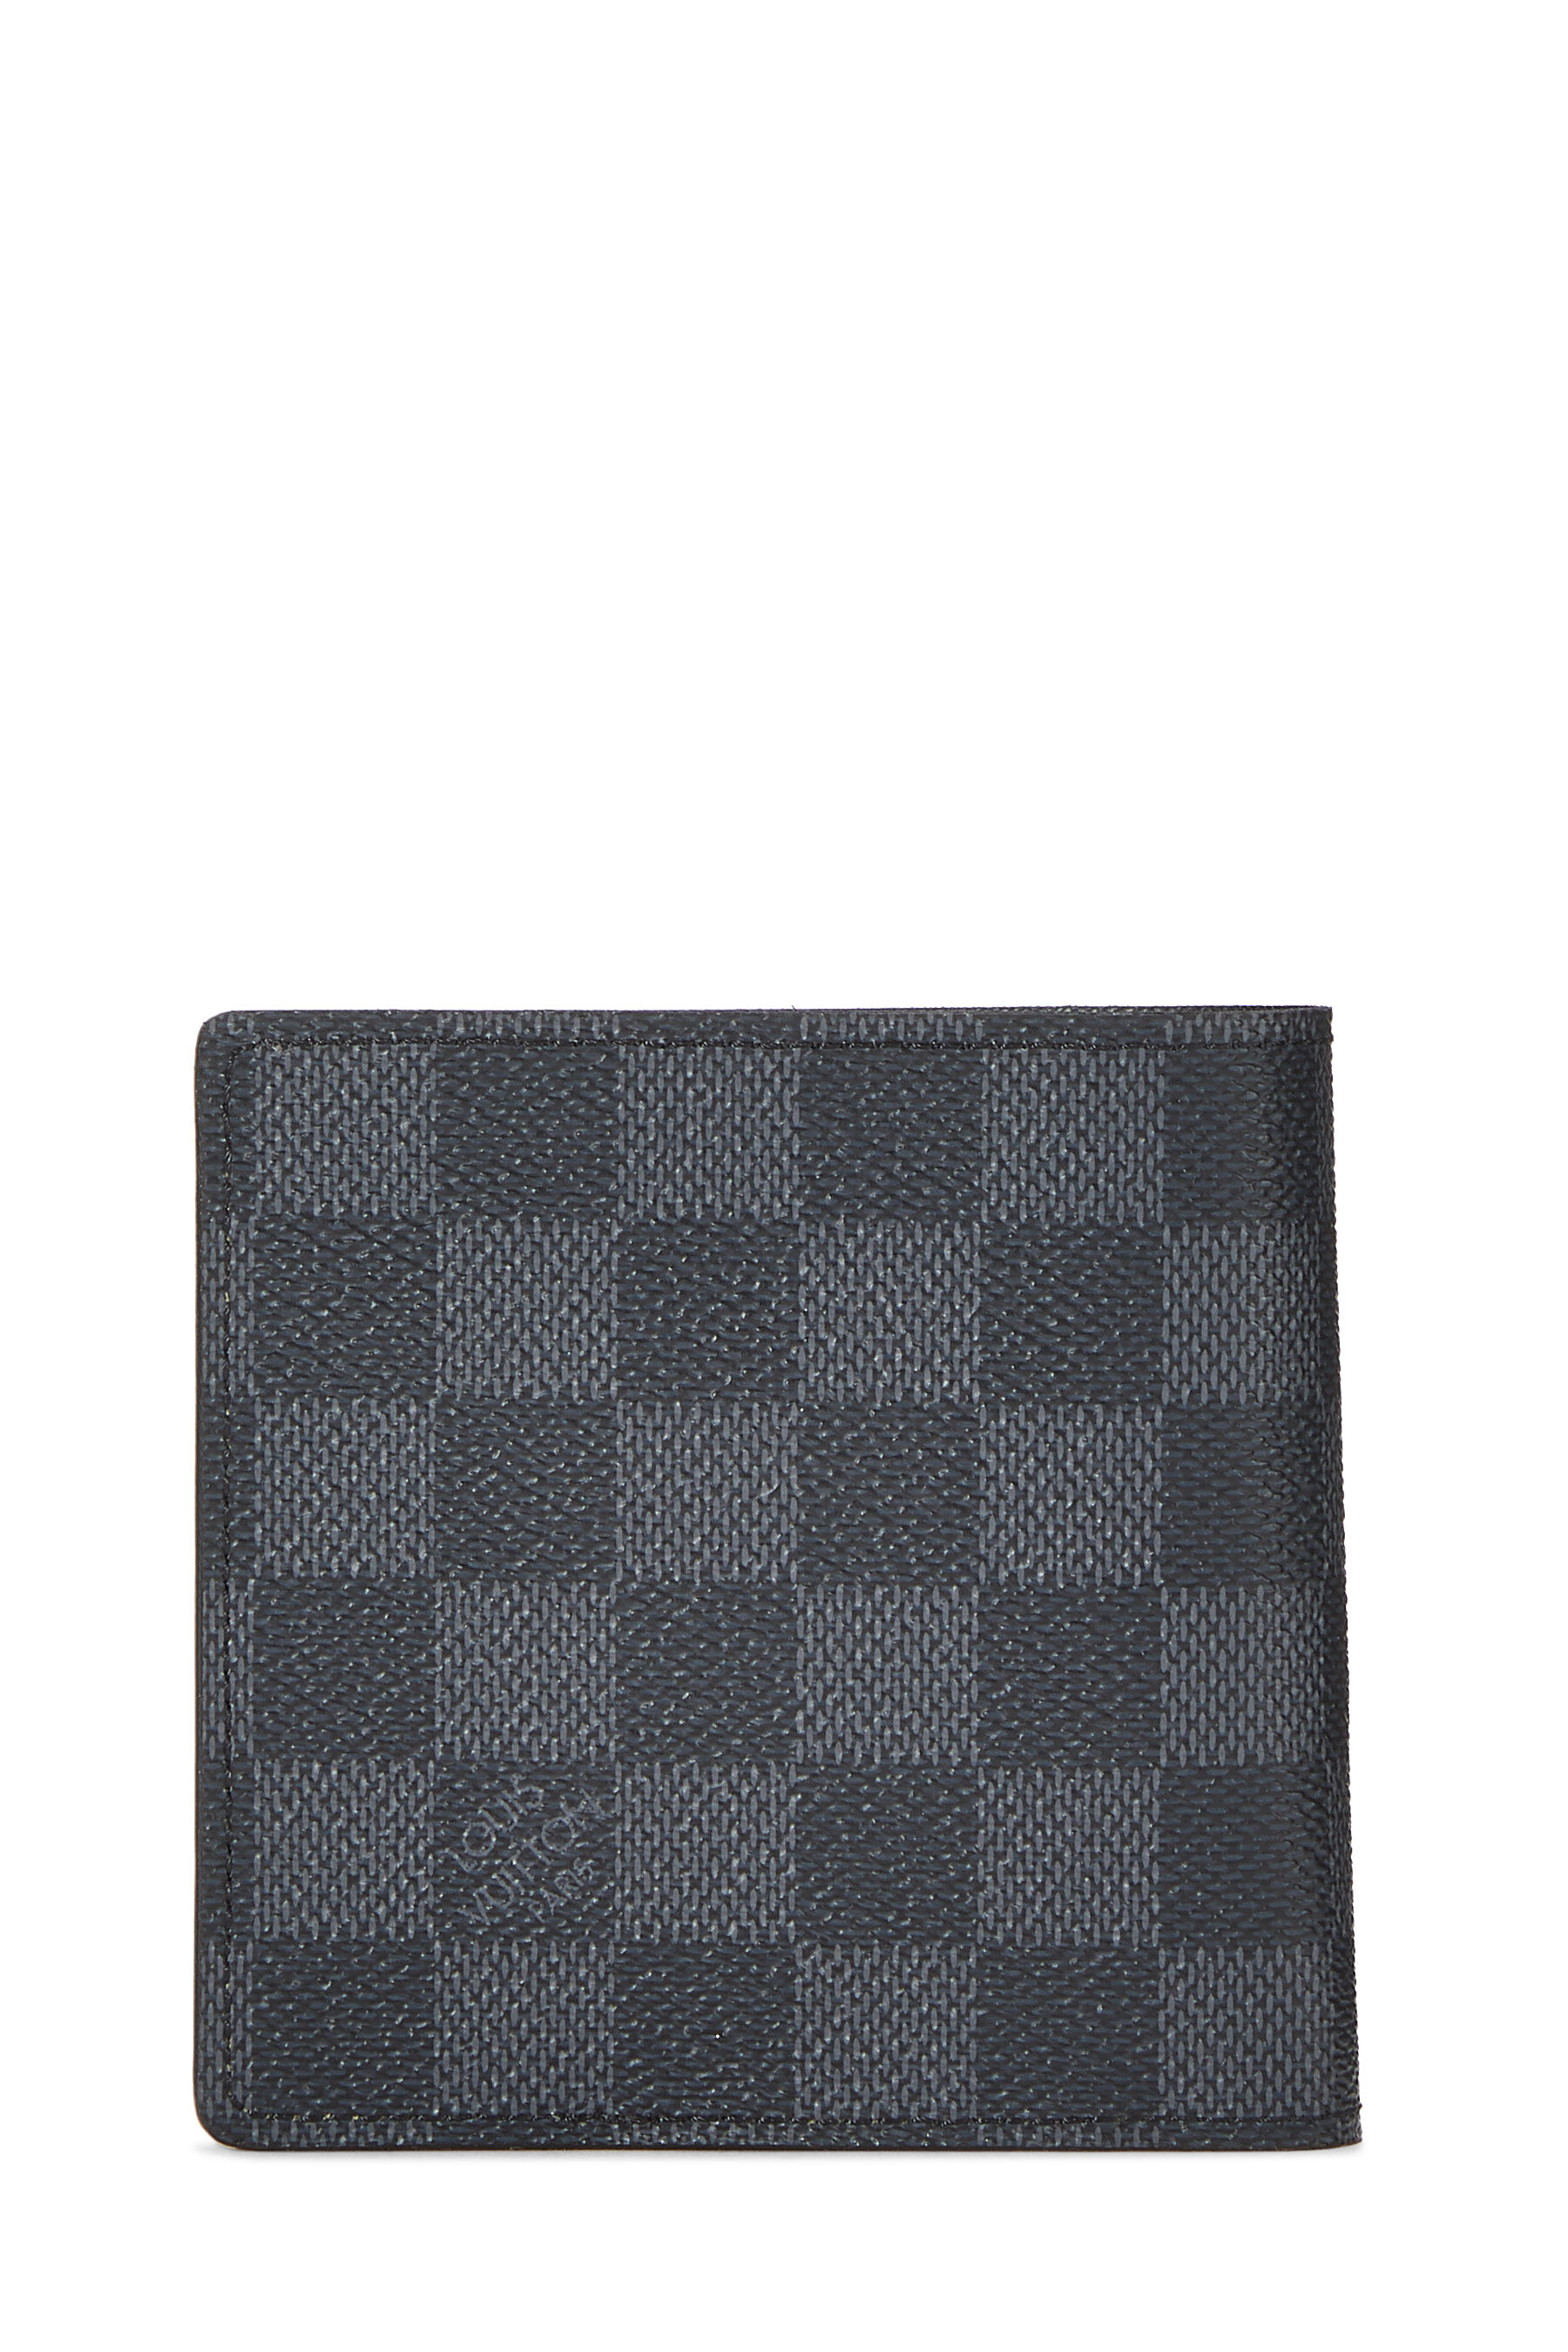 Louis Vuitton - Damier Graphite Marco Wallet